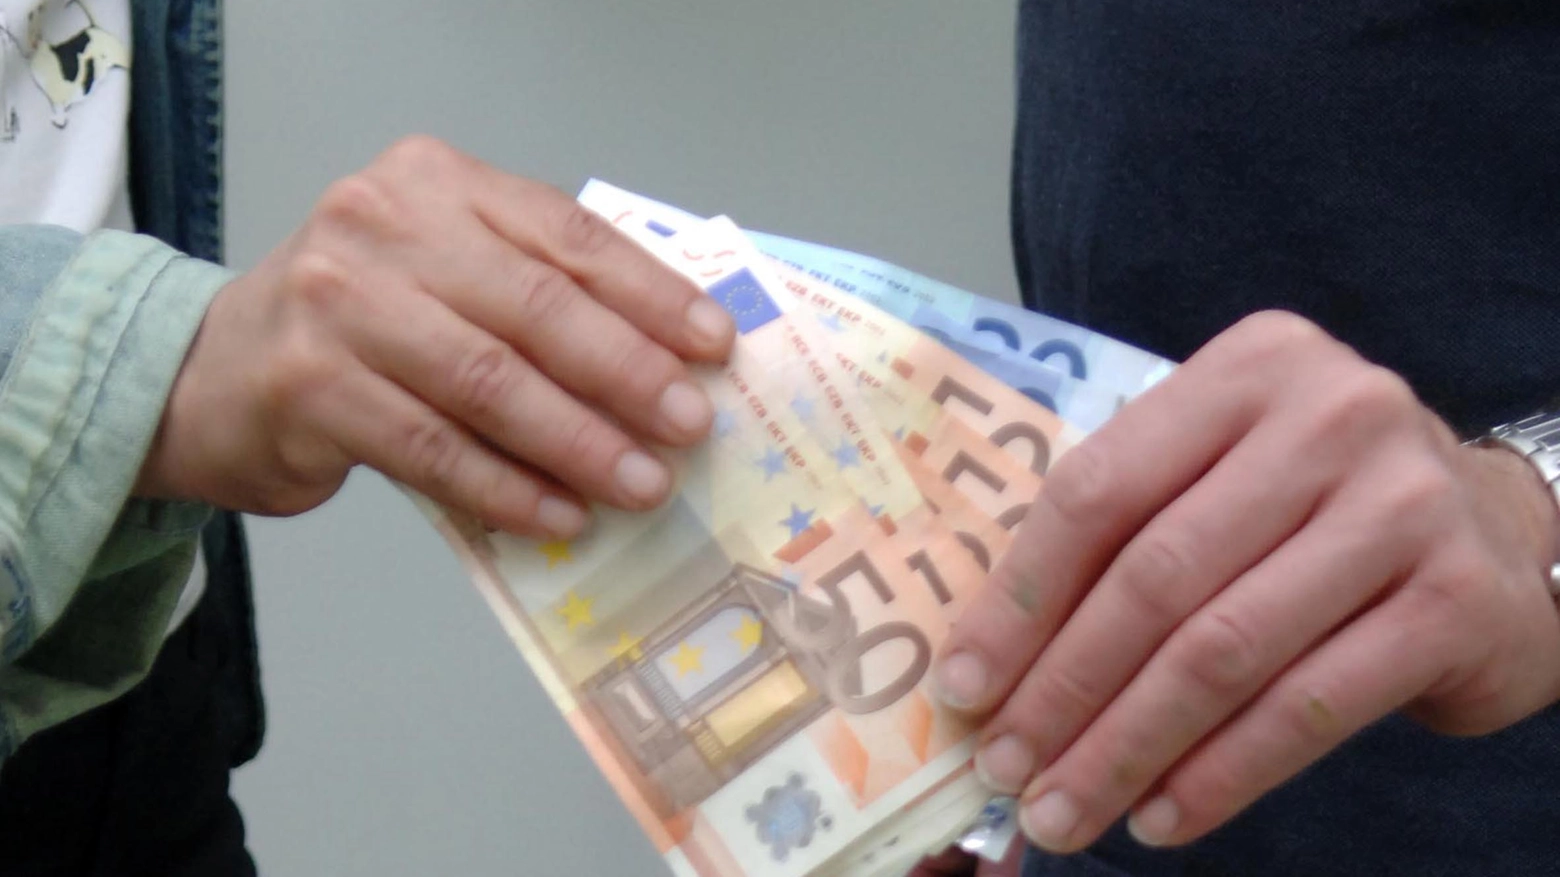 La donna ha consegnato oltre 150 euro